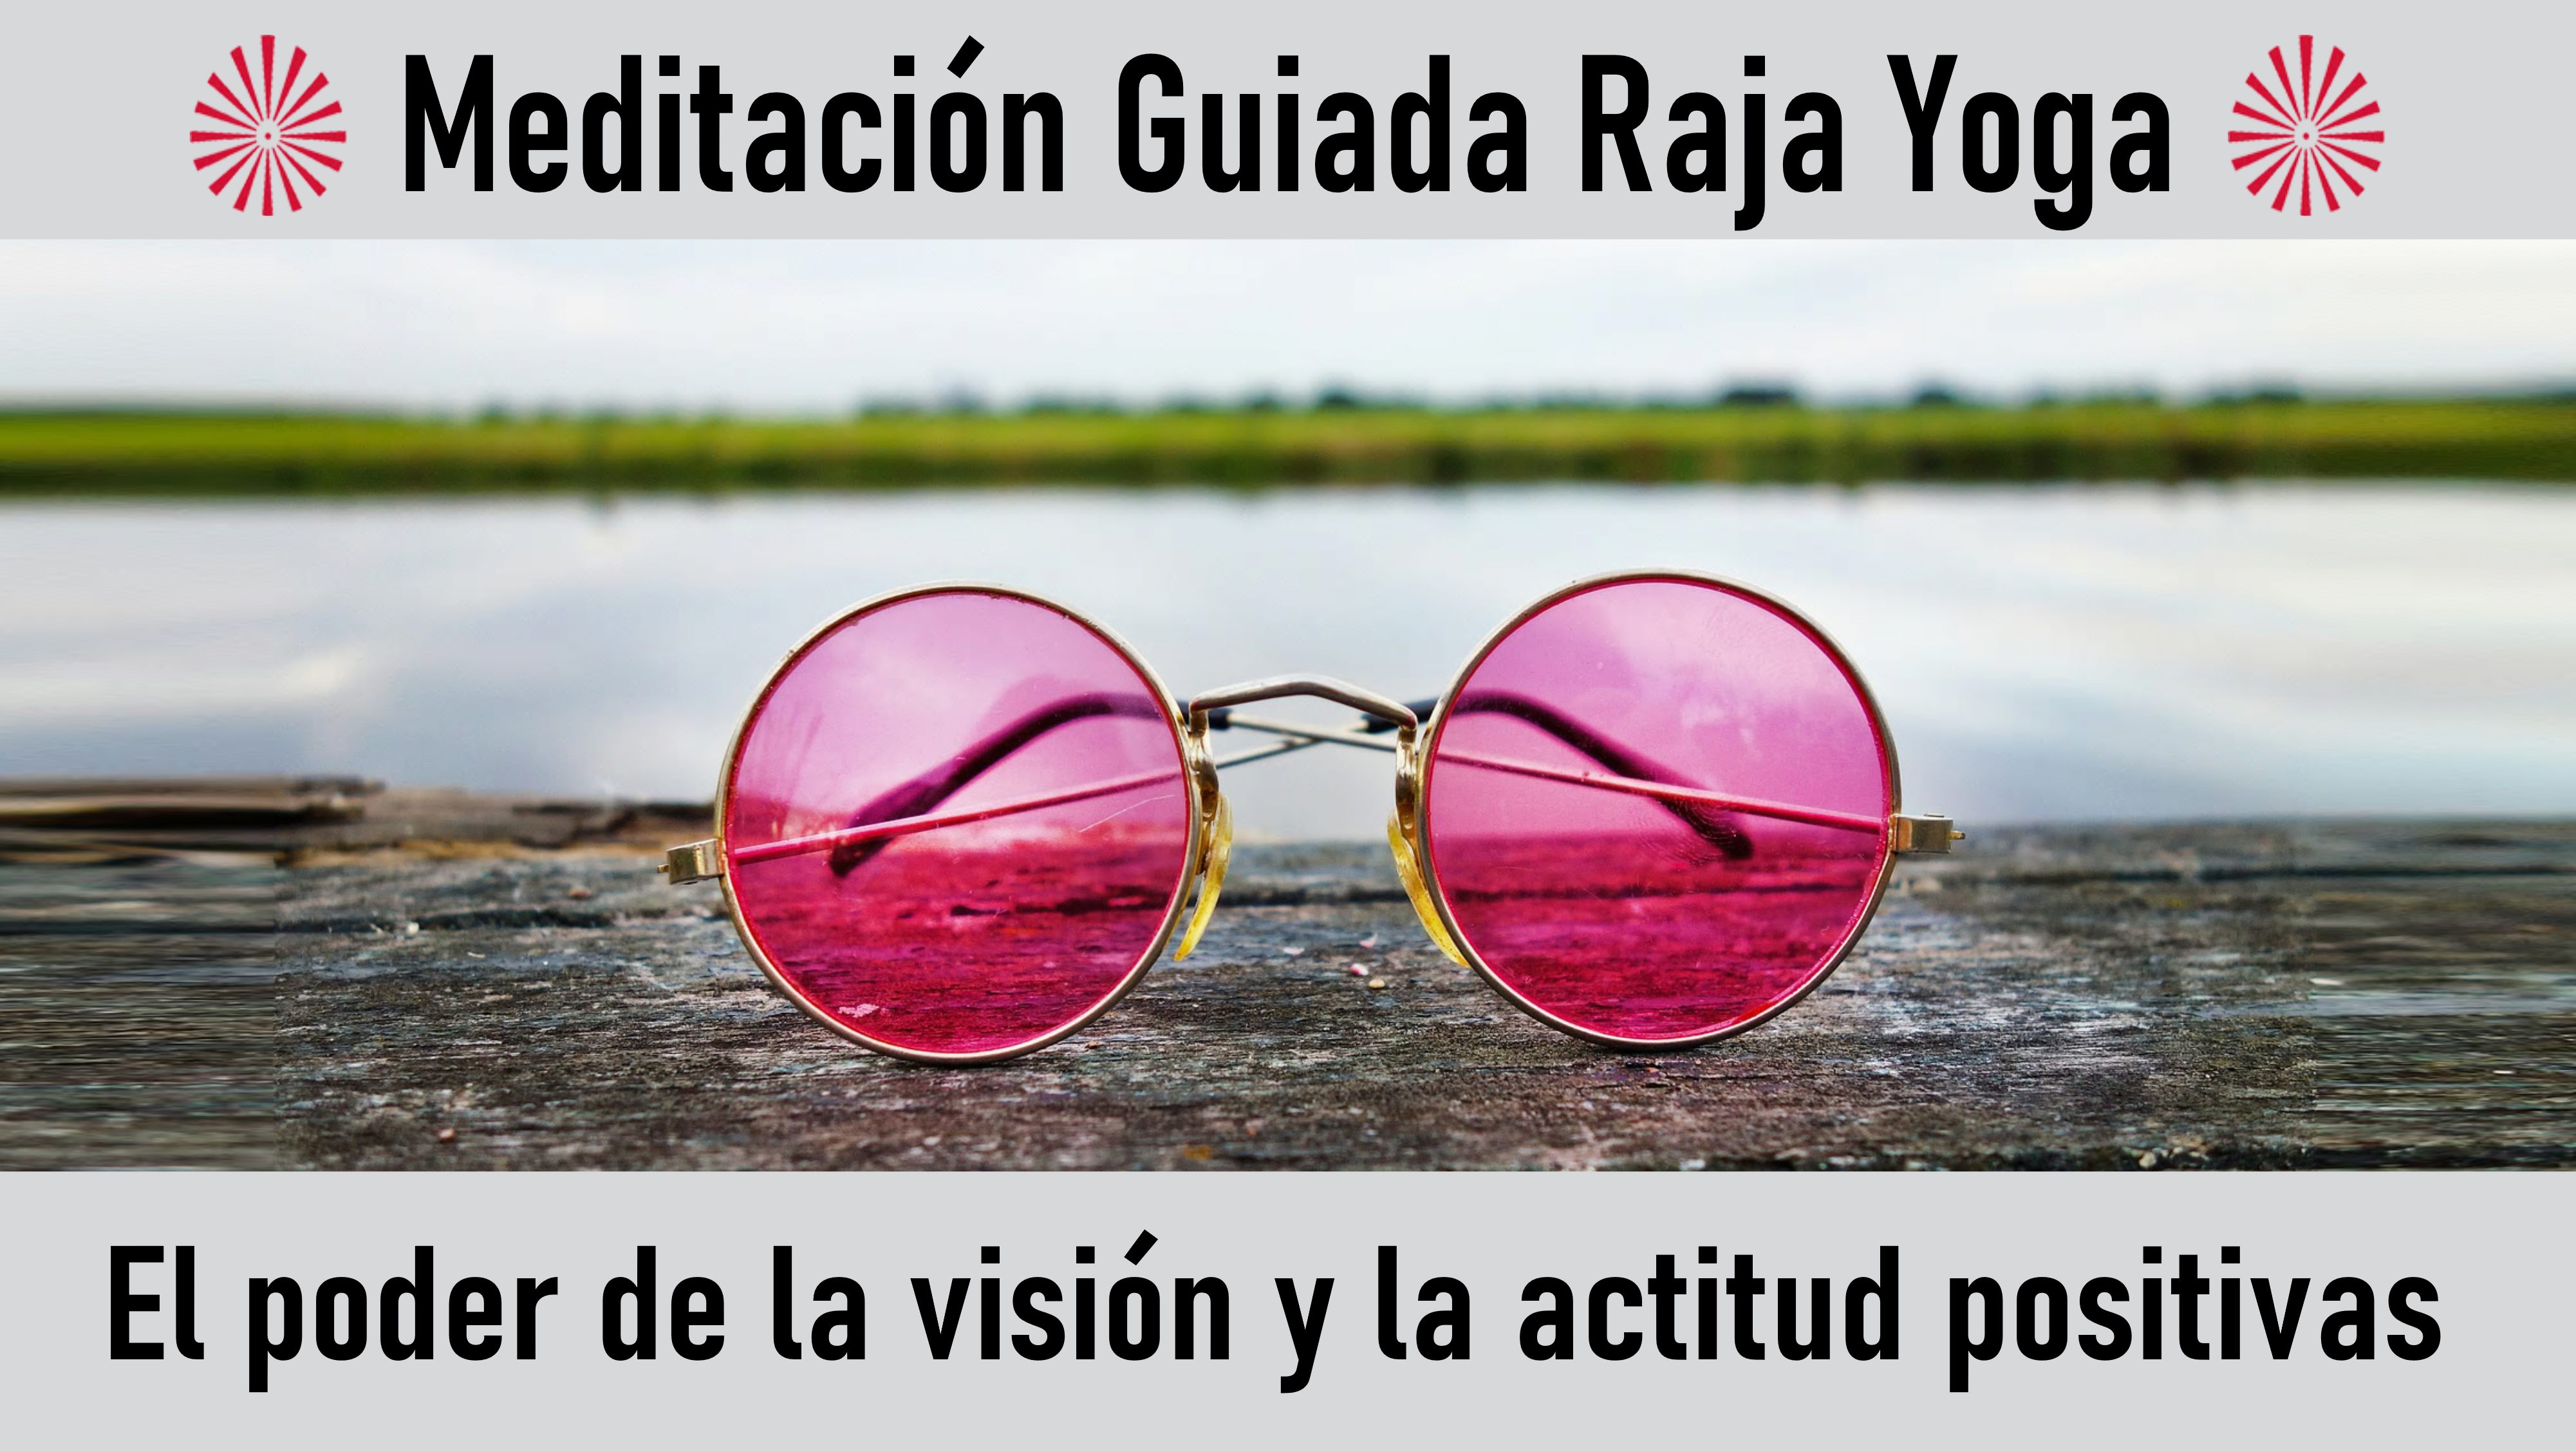 Meditación Raja Yoga: El Poder de la visión y la actitud positivas (1 Agosto 2020) On-line desde Valencia